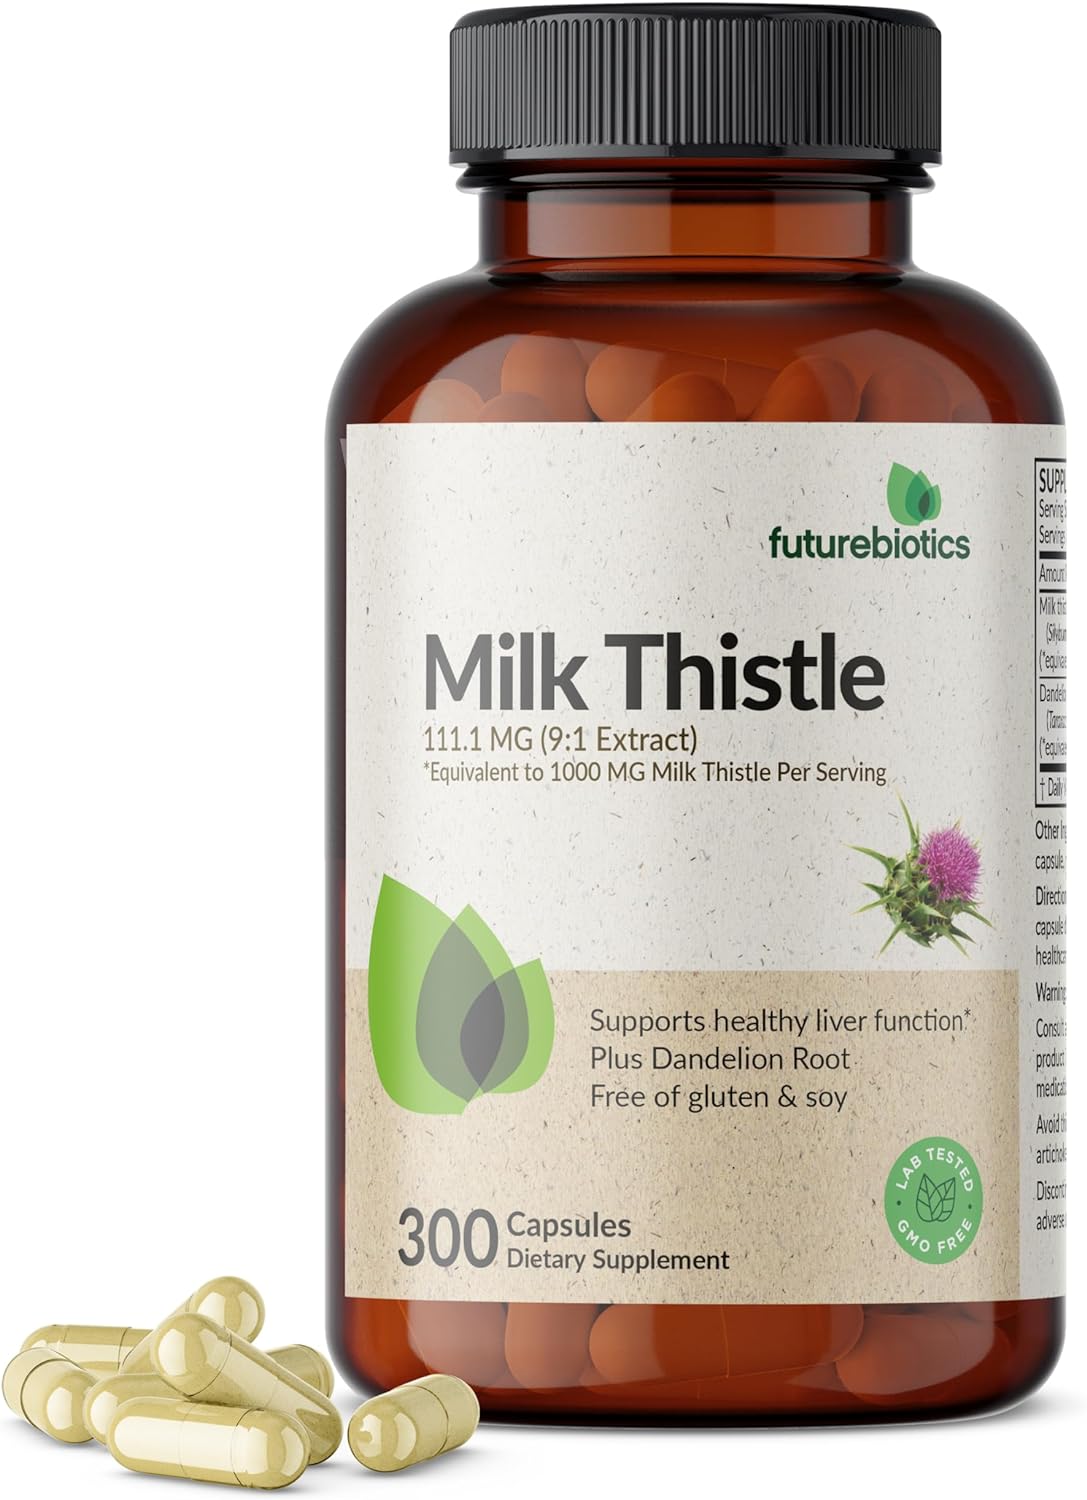 Futurebiotics Milk Thistle Silymarin Marianum & Dandelion Root Liver Health Support, Antioxidant Support, Detox, 300 Capsules